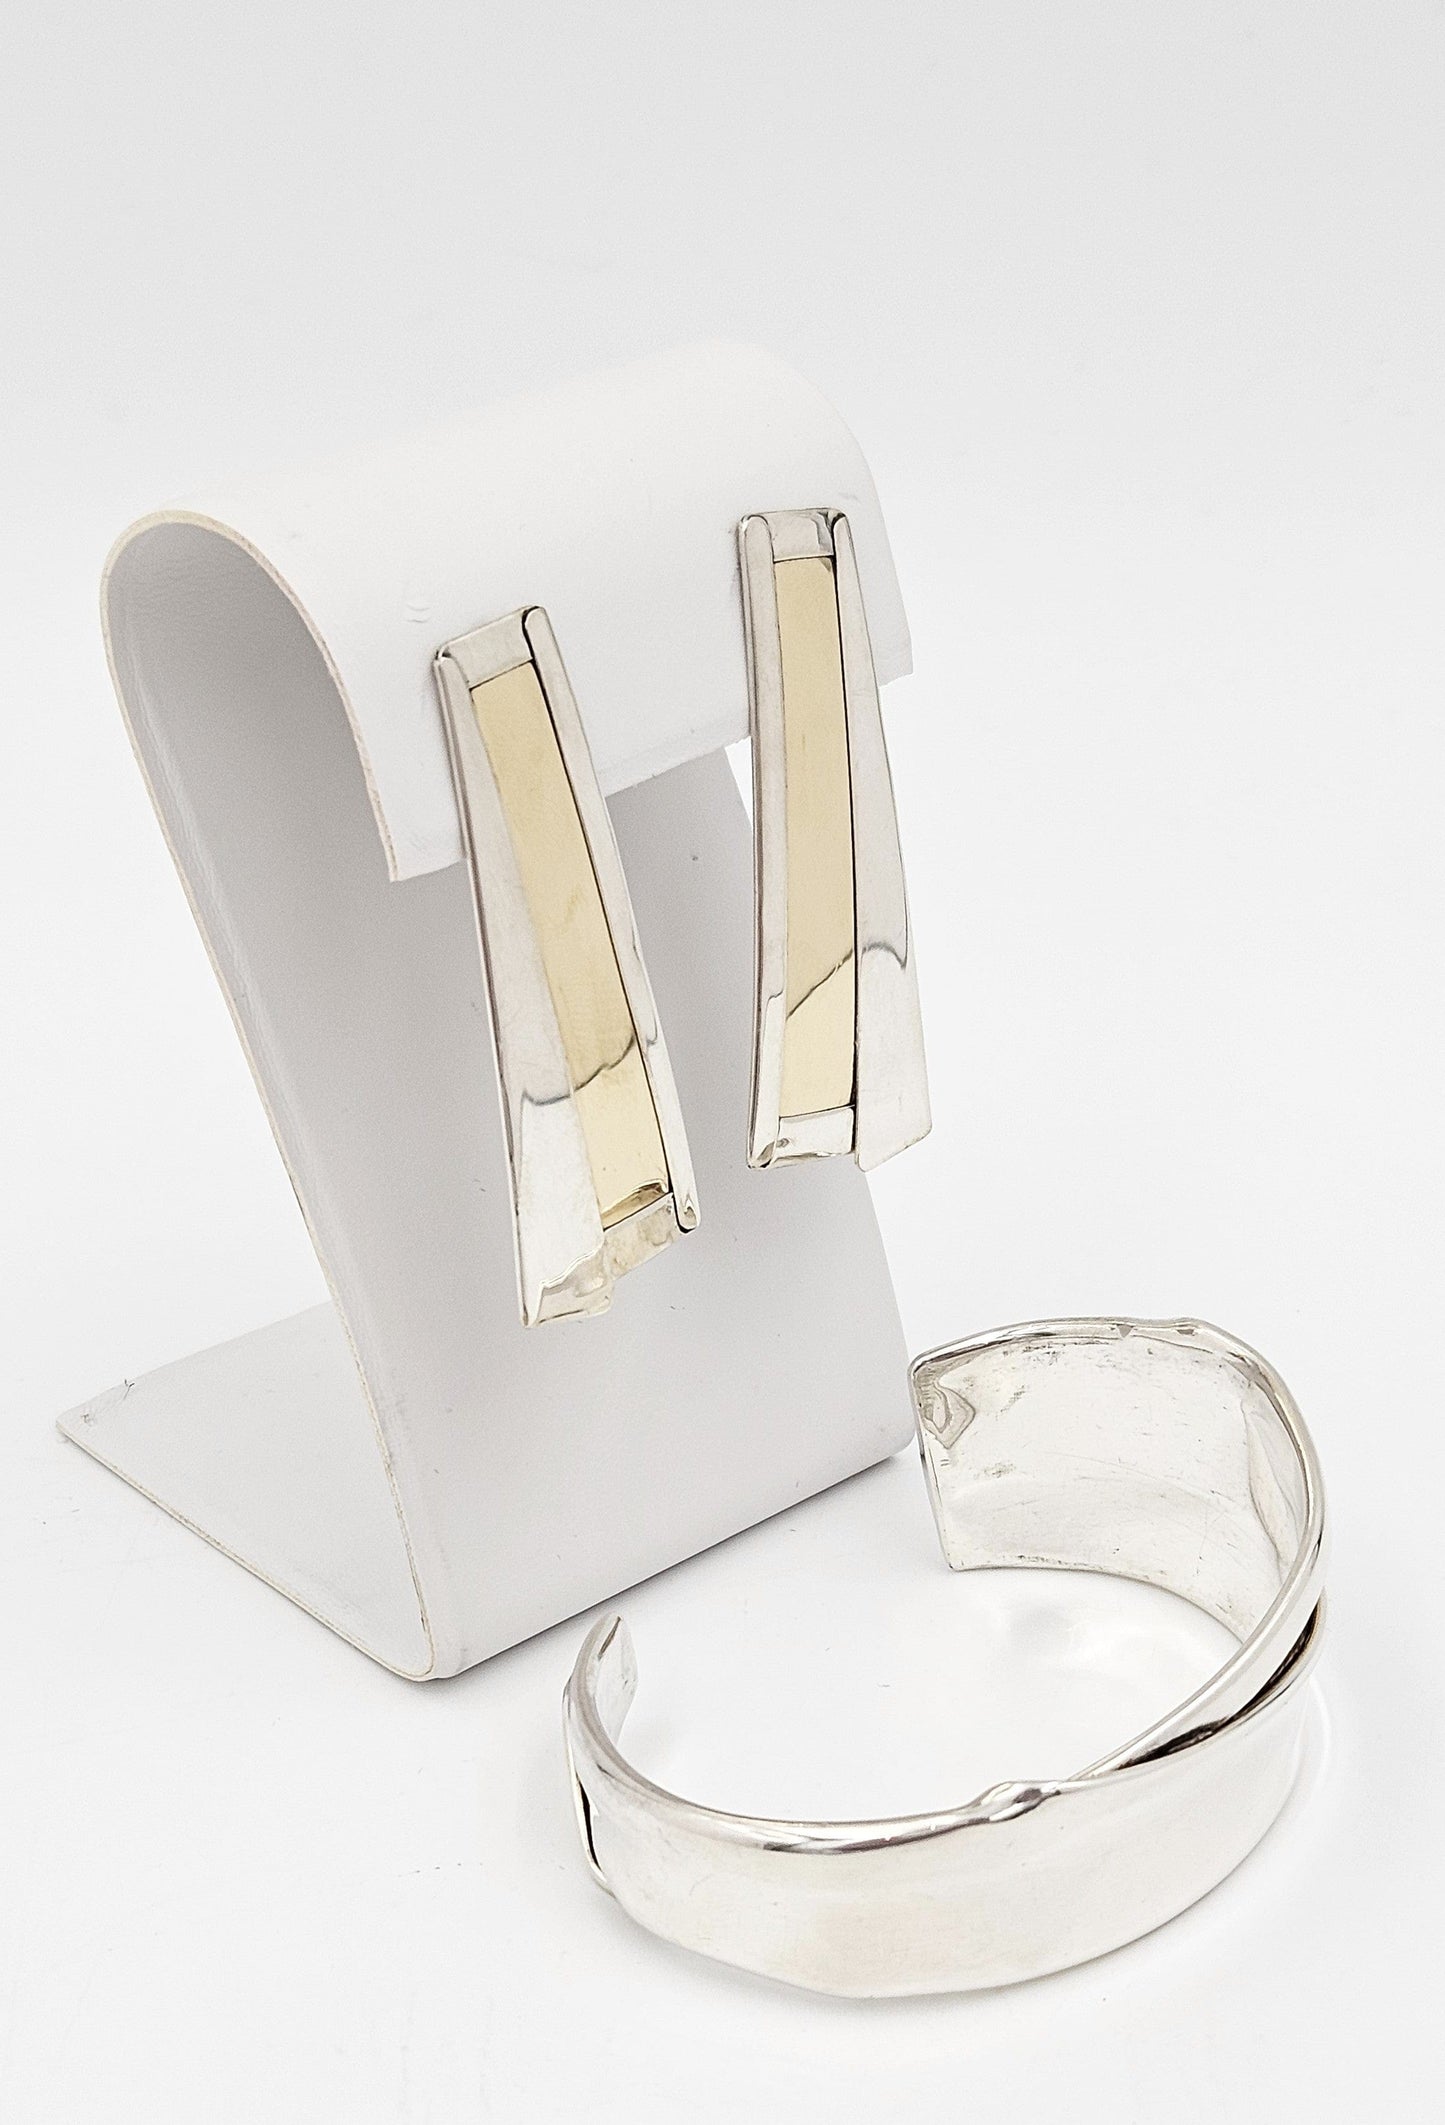 Katz Turner Jewelry Designer Katz Turner Sterling & Gold Bracelet & Earring Set